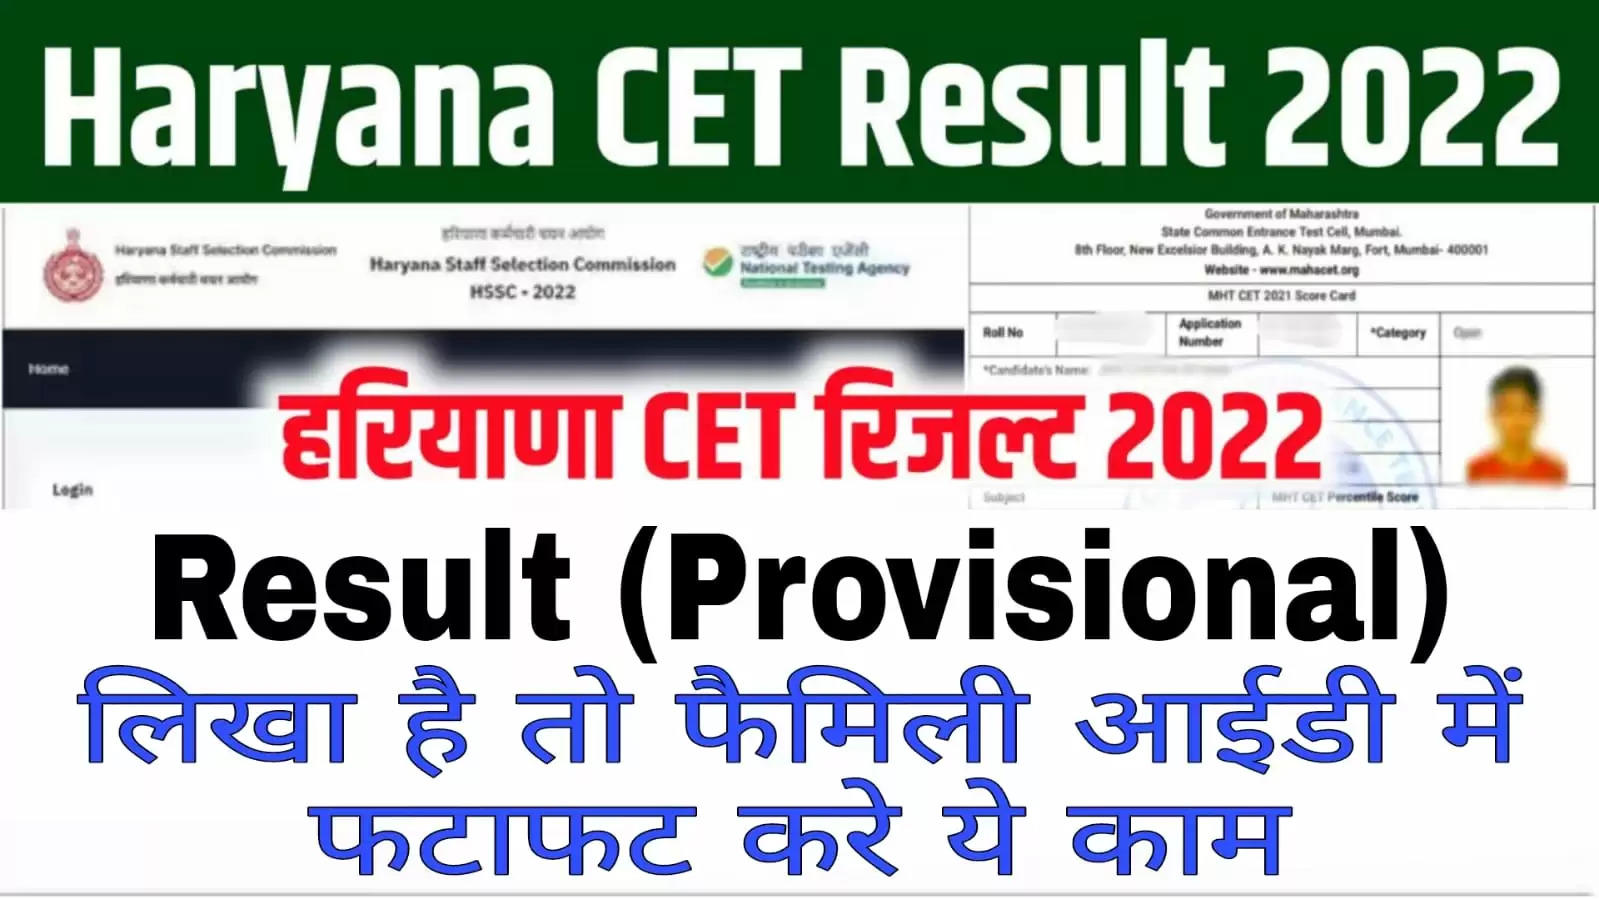 Haryana Cet result : हरियाणा में जारी हुए CET रिजल्ट को लेकर बड़ी खबर, जिनके रिजल्ट में ये Provisional के साथ ये लिखा है, तो फटाफट करे ये काम